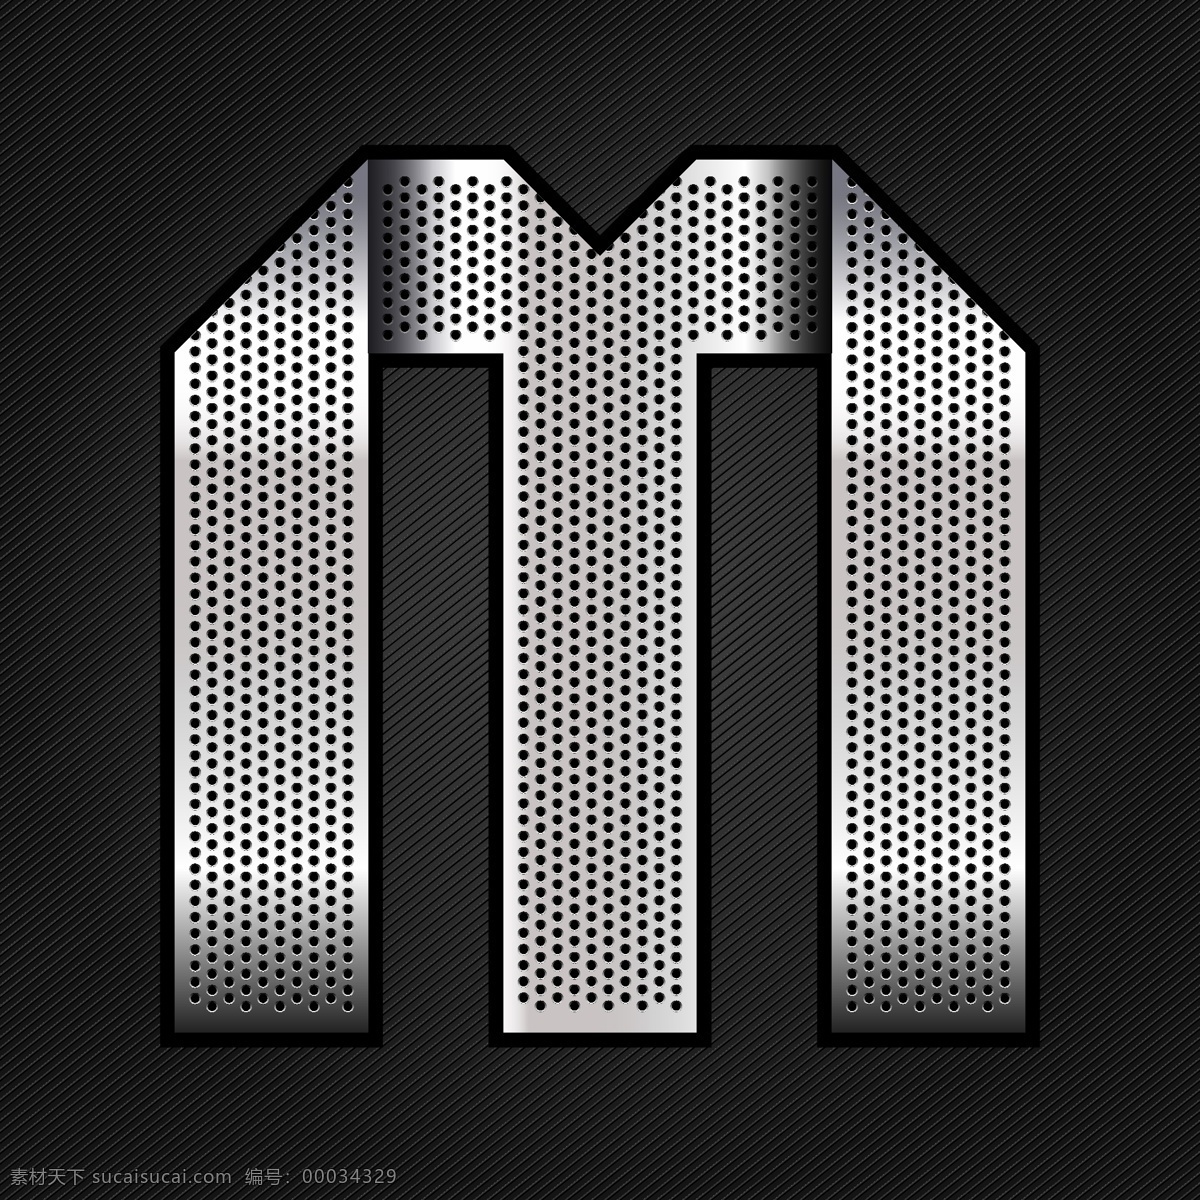 金属字m设计 m 金属字 英文 字母 立体字 金属 不锈钢 字体设计 艺术字体 书画文字 文化艺术 矢量素材 黑色